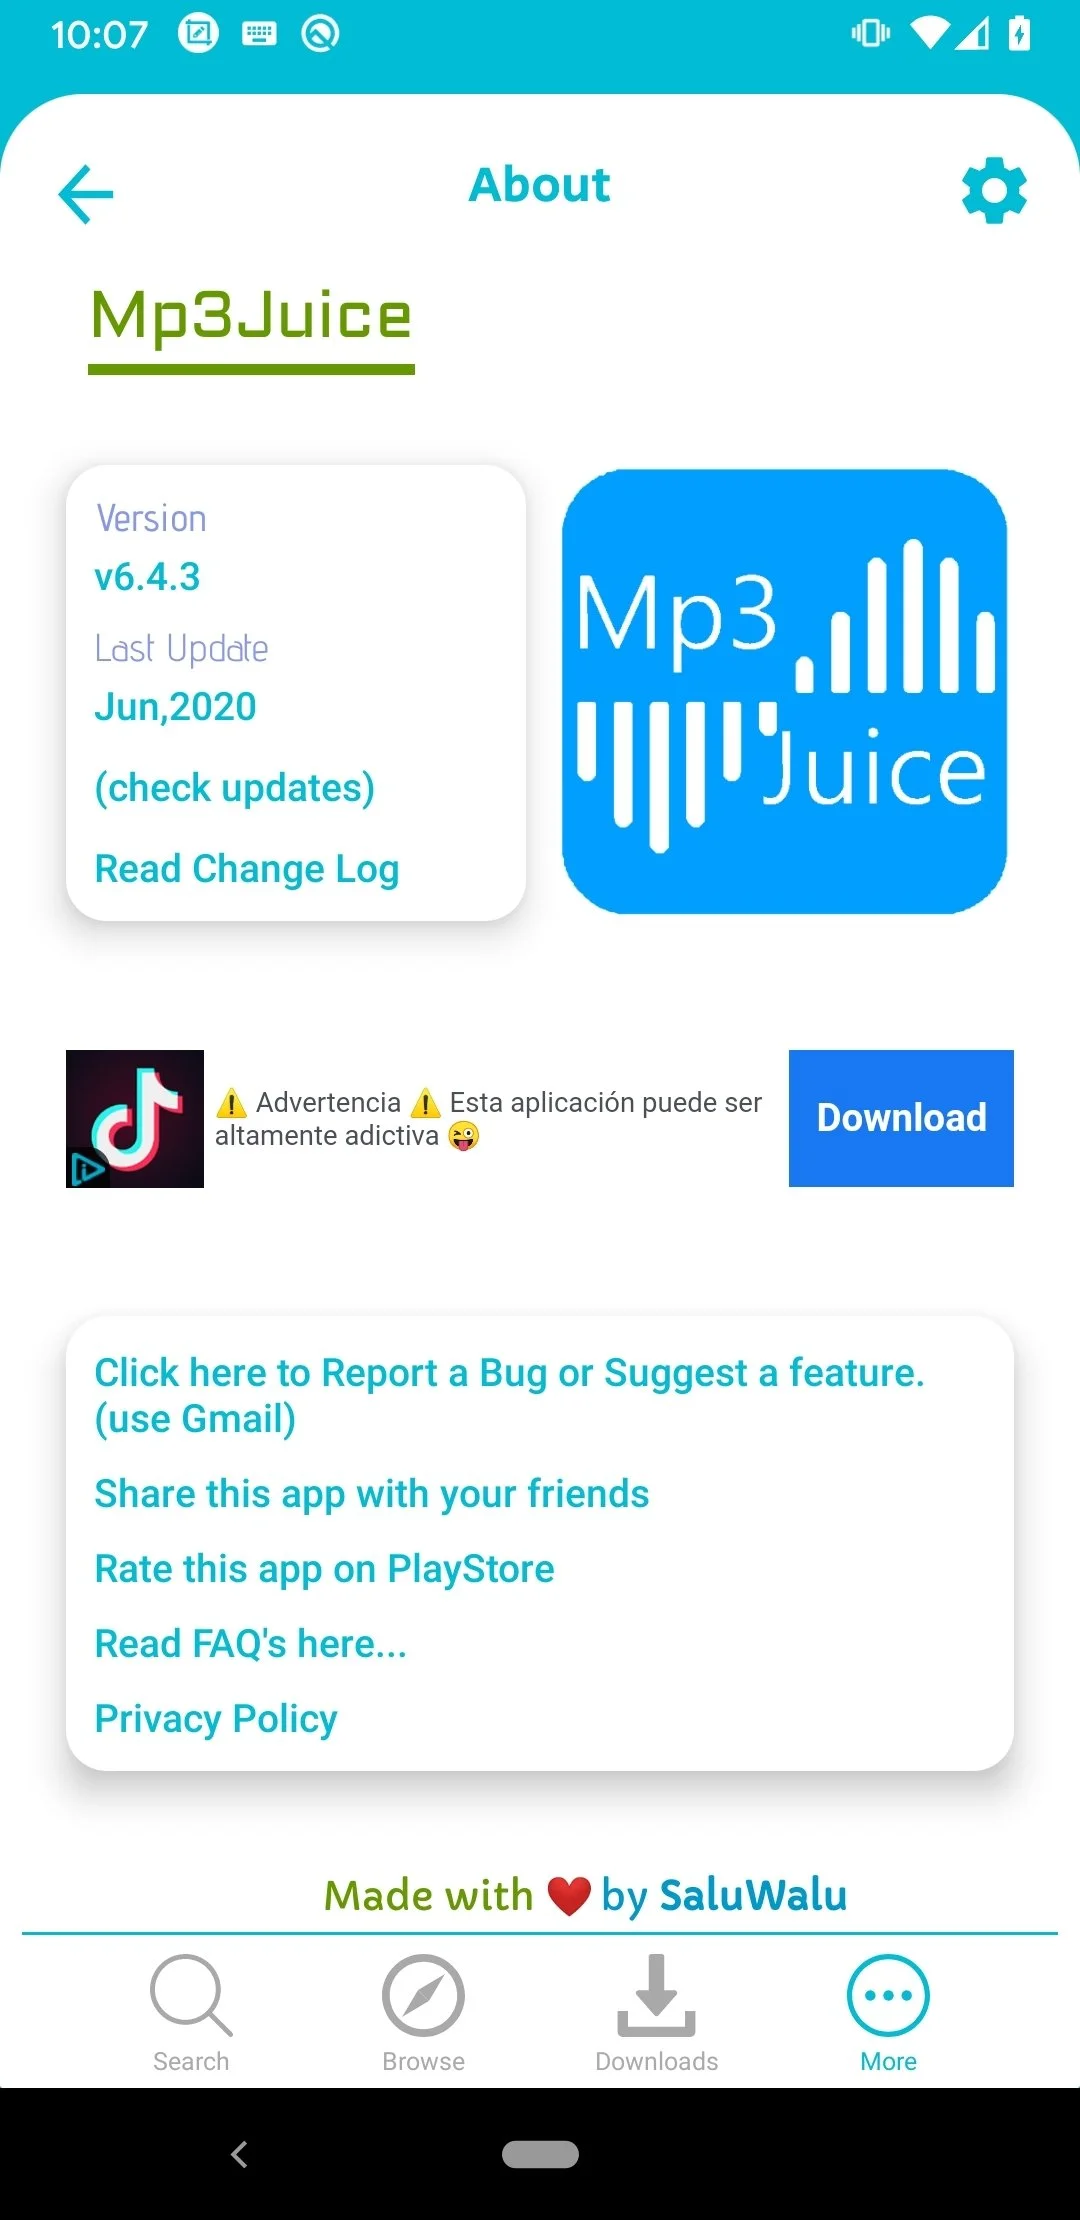 mp3juice 28387 2 - MP3 Juice Downloader Mod Apk v11.4.10 (Unlocked) Latest